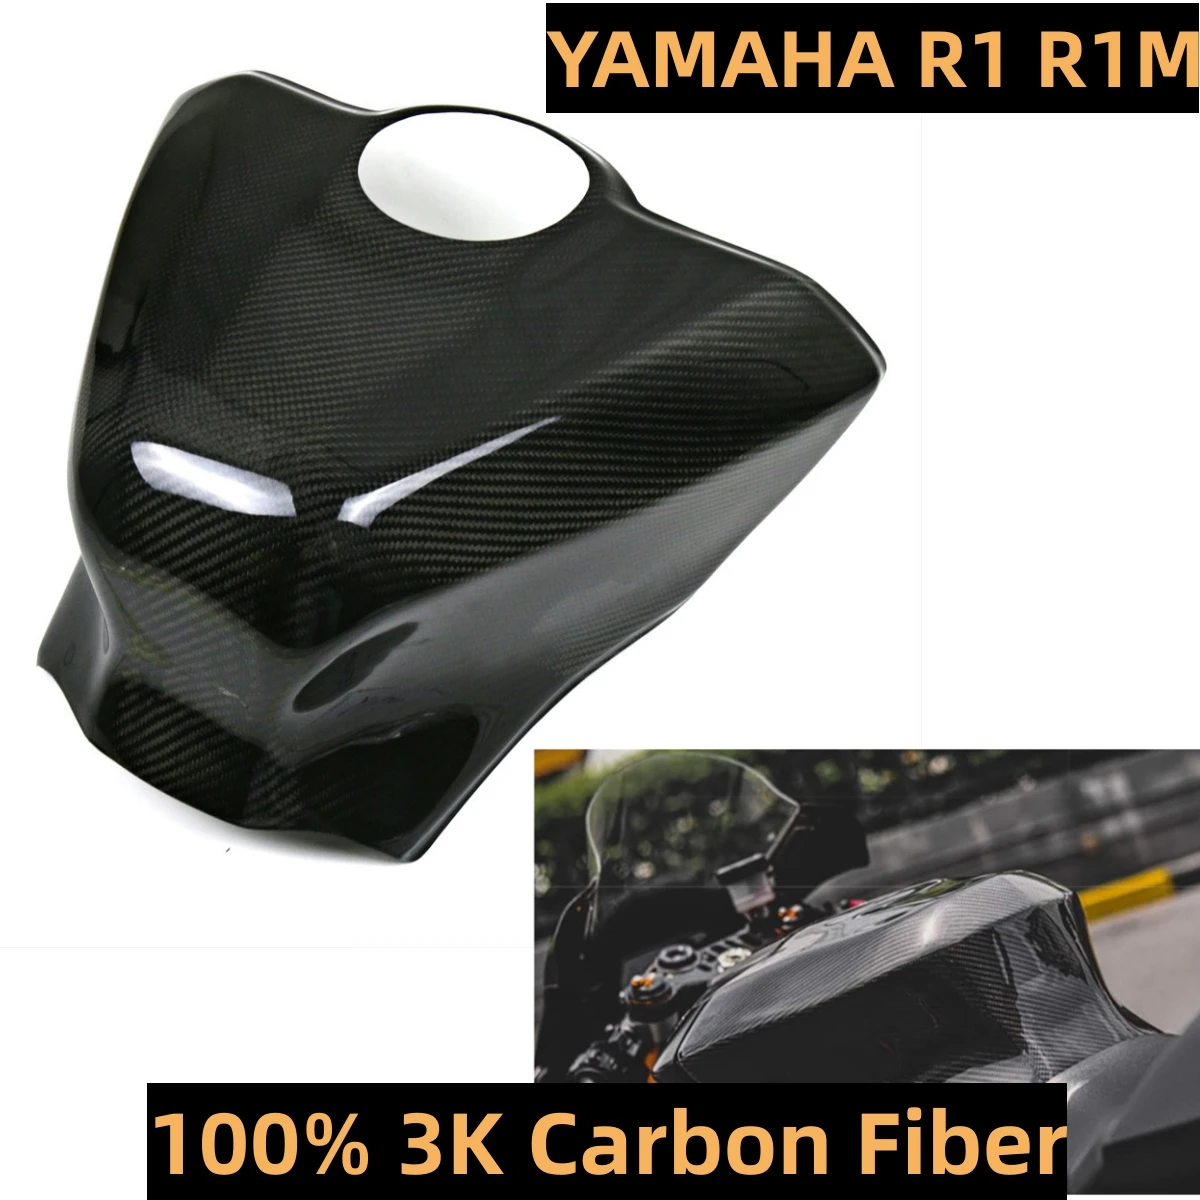 

Комплект обтекателей для бака из углеродного волокна 3K, комплект обтекателей для рамы мотоцикла YAMAHA R1 R1M 2015 2016 2017 2018 2019 2020 2021 2022